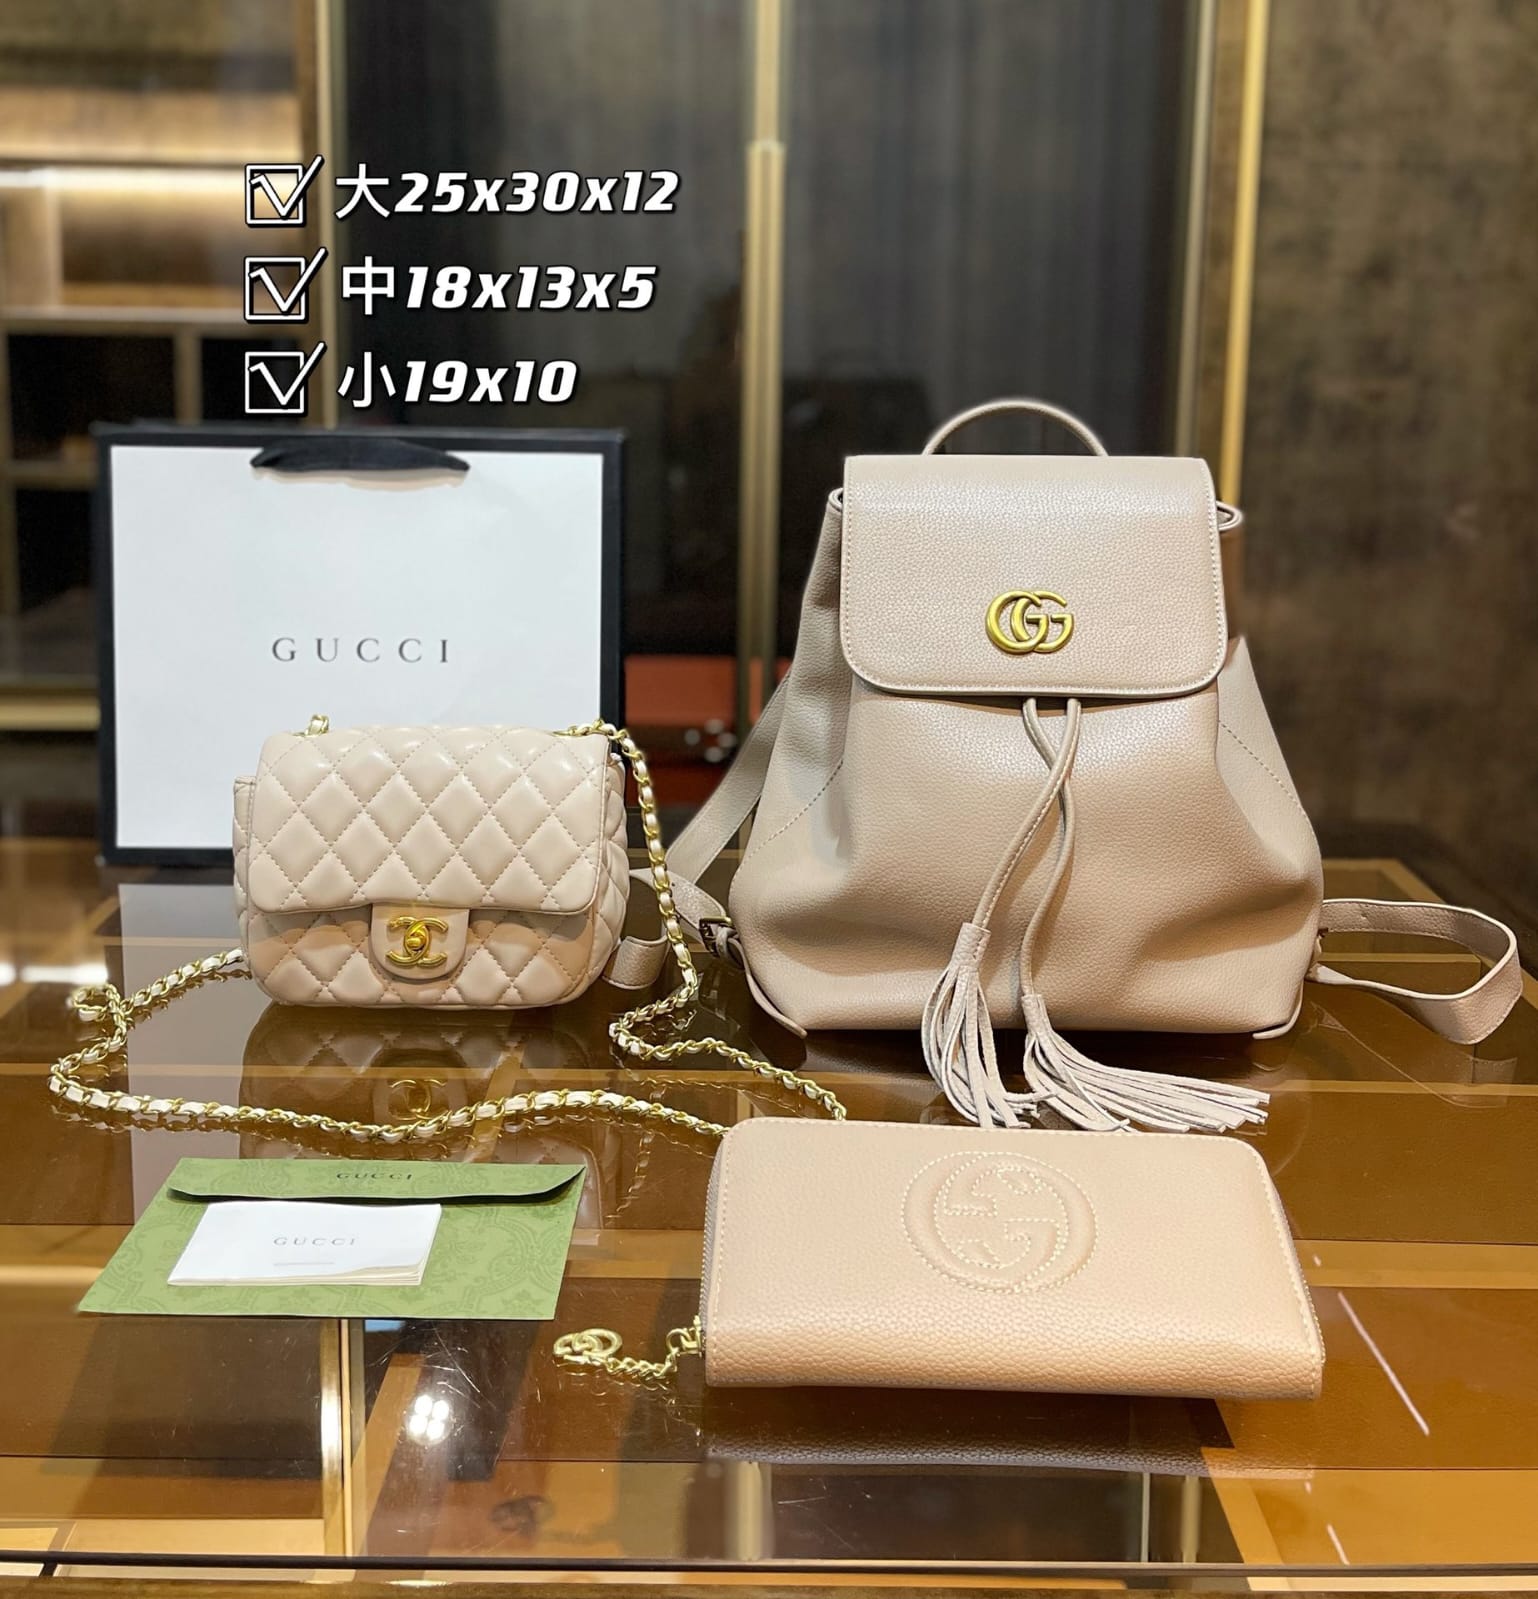 Copy of Gucci Handbag Backpack Sets